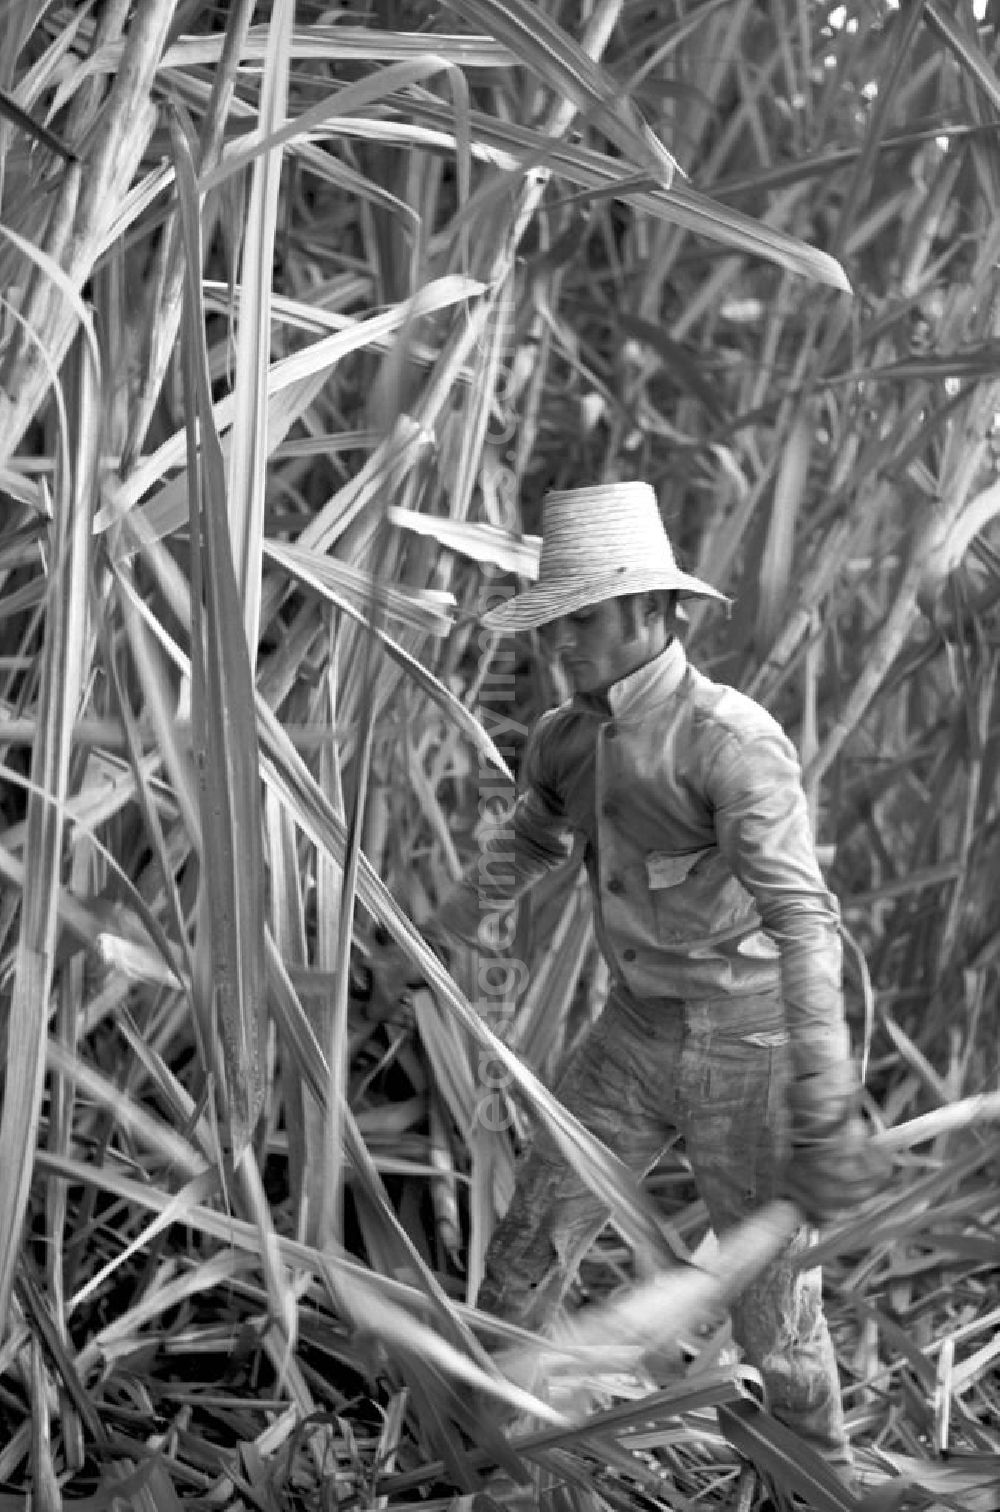 GDR picture archive: Camagüey - Die Zuckerrohrernte - die sogenannte Zafra - erfolgt in Kuba noch meist auf traditionelle Weise, hier ein Arbeiter bei der Ernte des Zuckerrohrs mit der Machete, aufgenommen am 22.11.1972 in der kubanischen Provinz Camagüey.